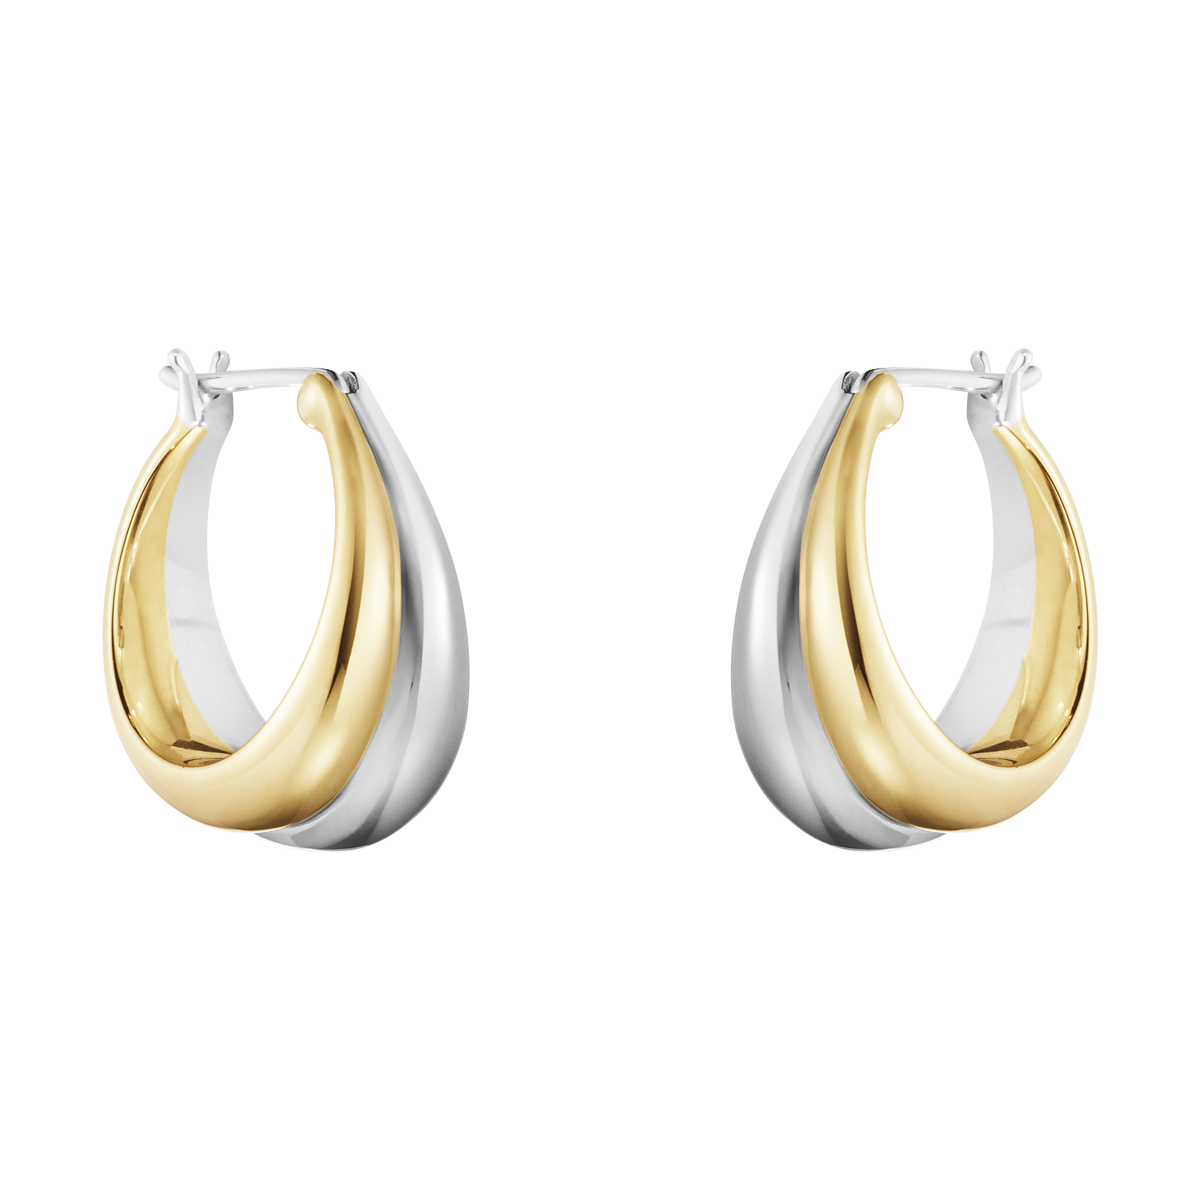 18k Gold & Sterling Silver Earrings #501A Georg Jensen Curve.